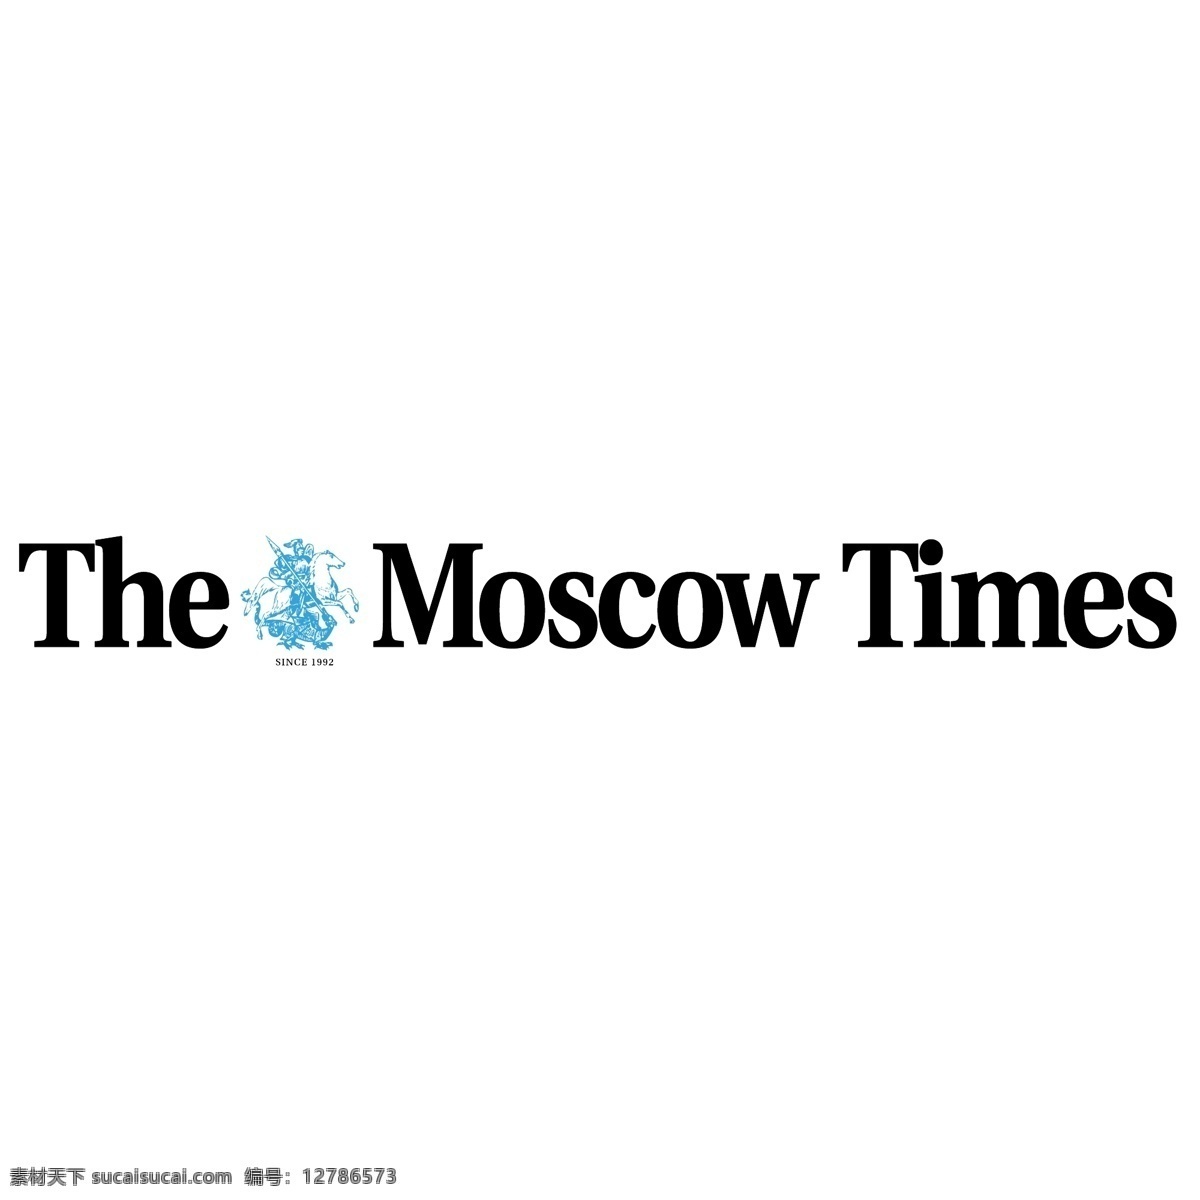 莫斯科的0倍 莫斯科 莫斯科的时代 时代 时报 杂志 矢量 次 向量 时间 免费 时代的载体 次数 白色